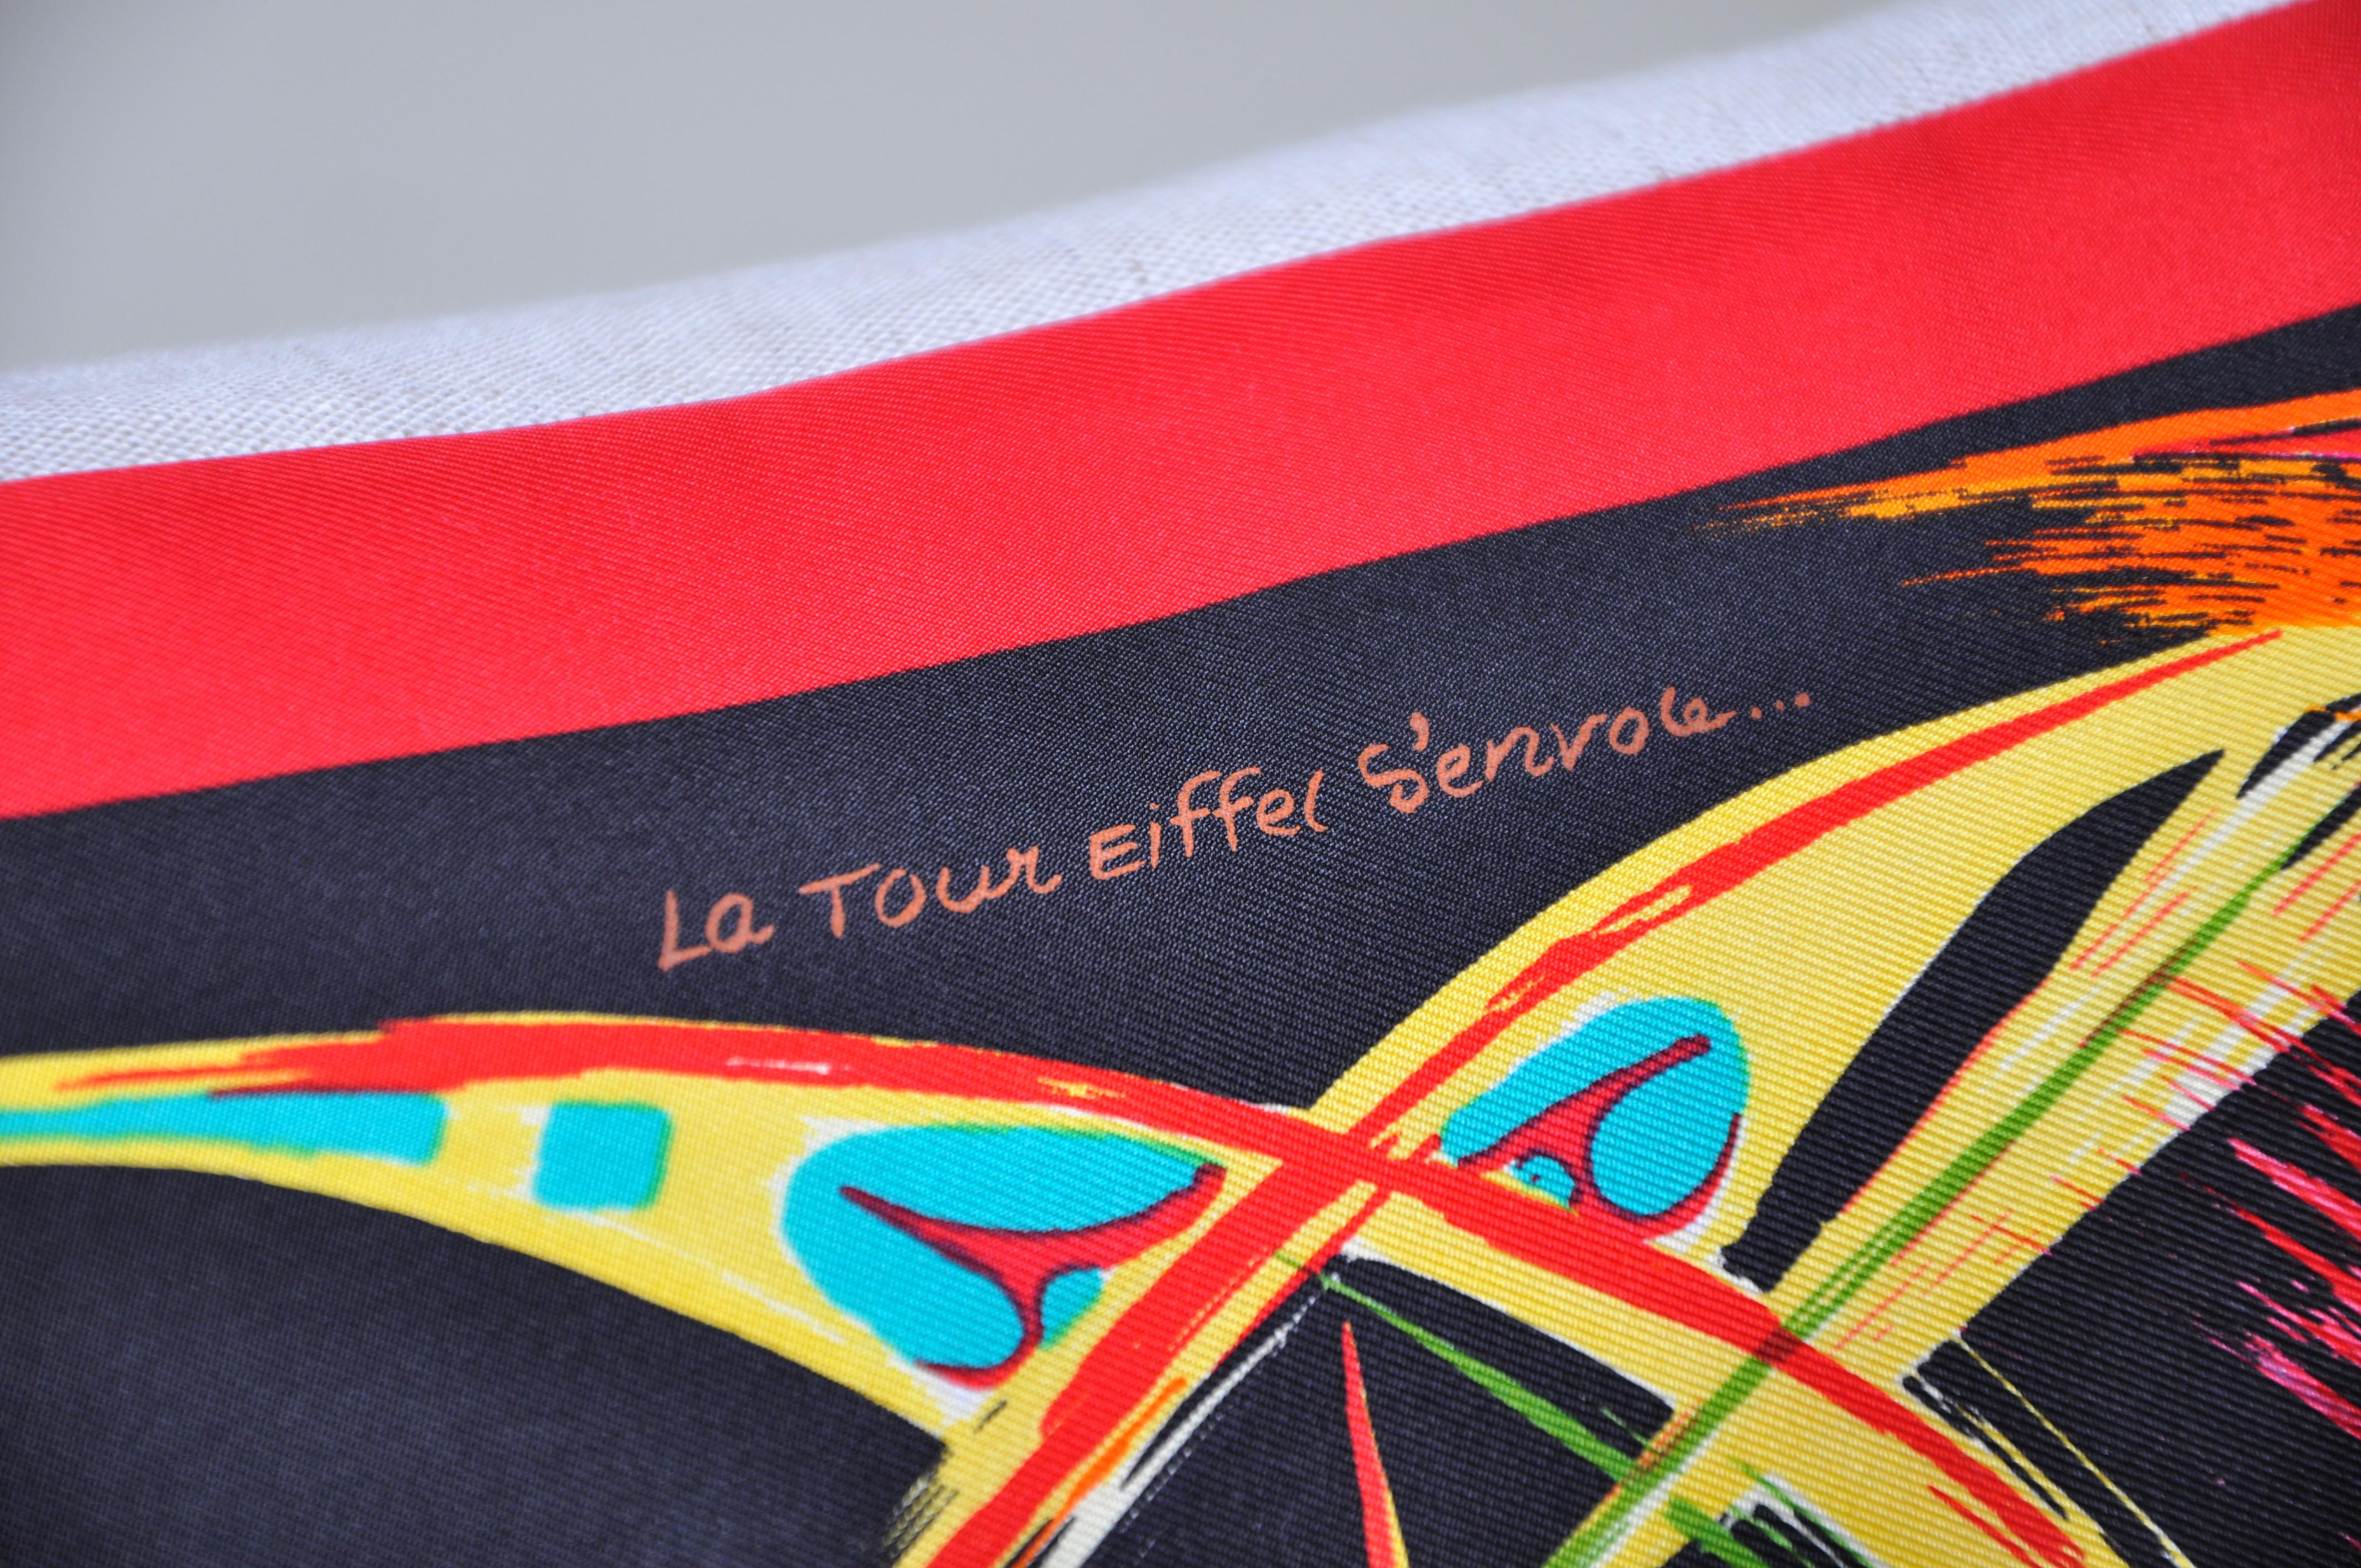 Rare vintage Hermès Tour Eiffel Paris foulard en soie et coussin en lin irlandais noir rouge bleu

La 